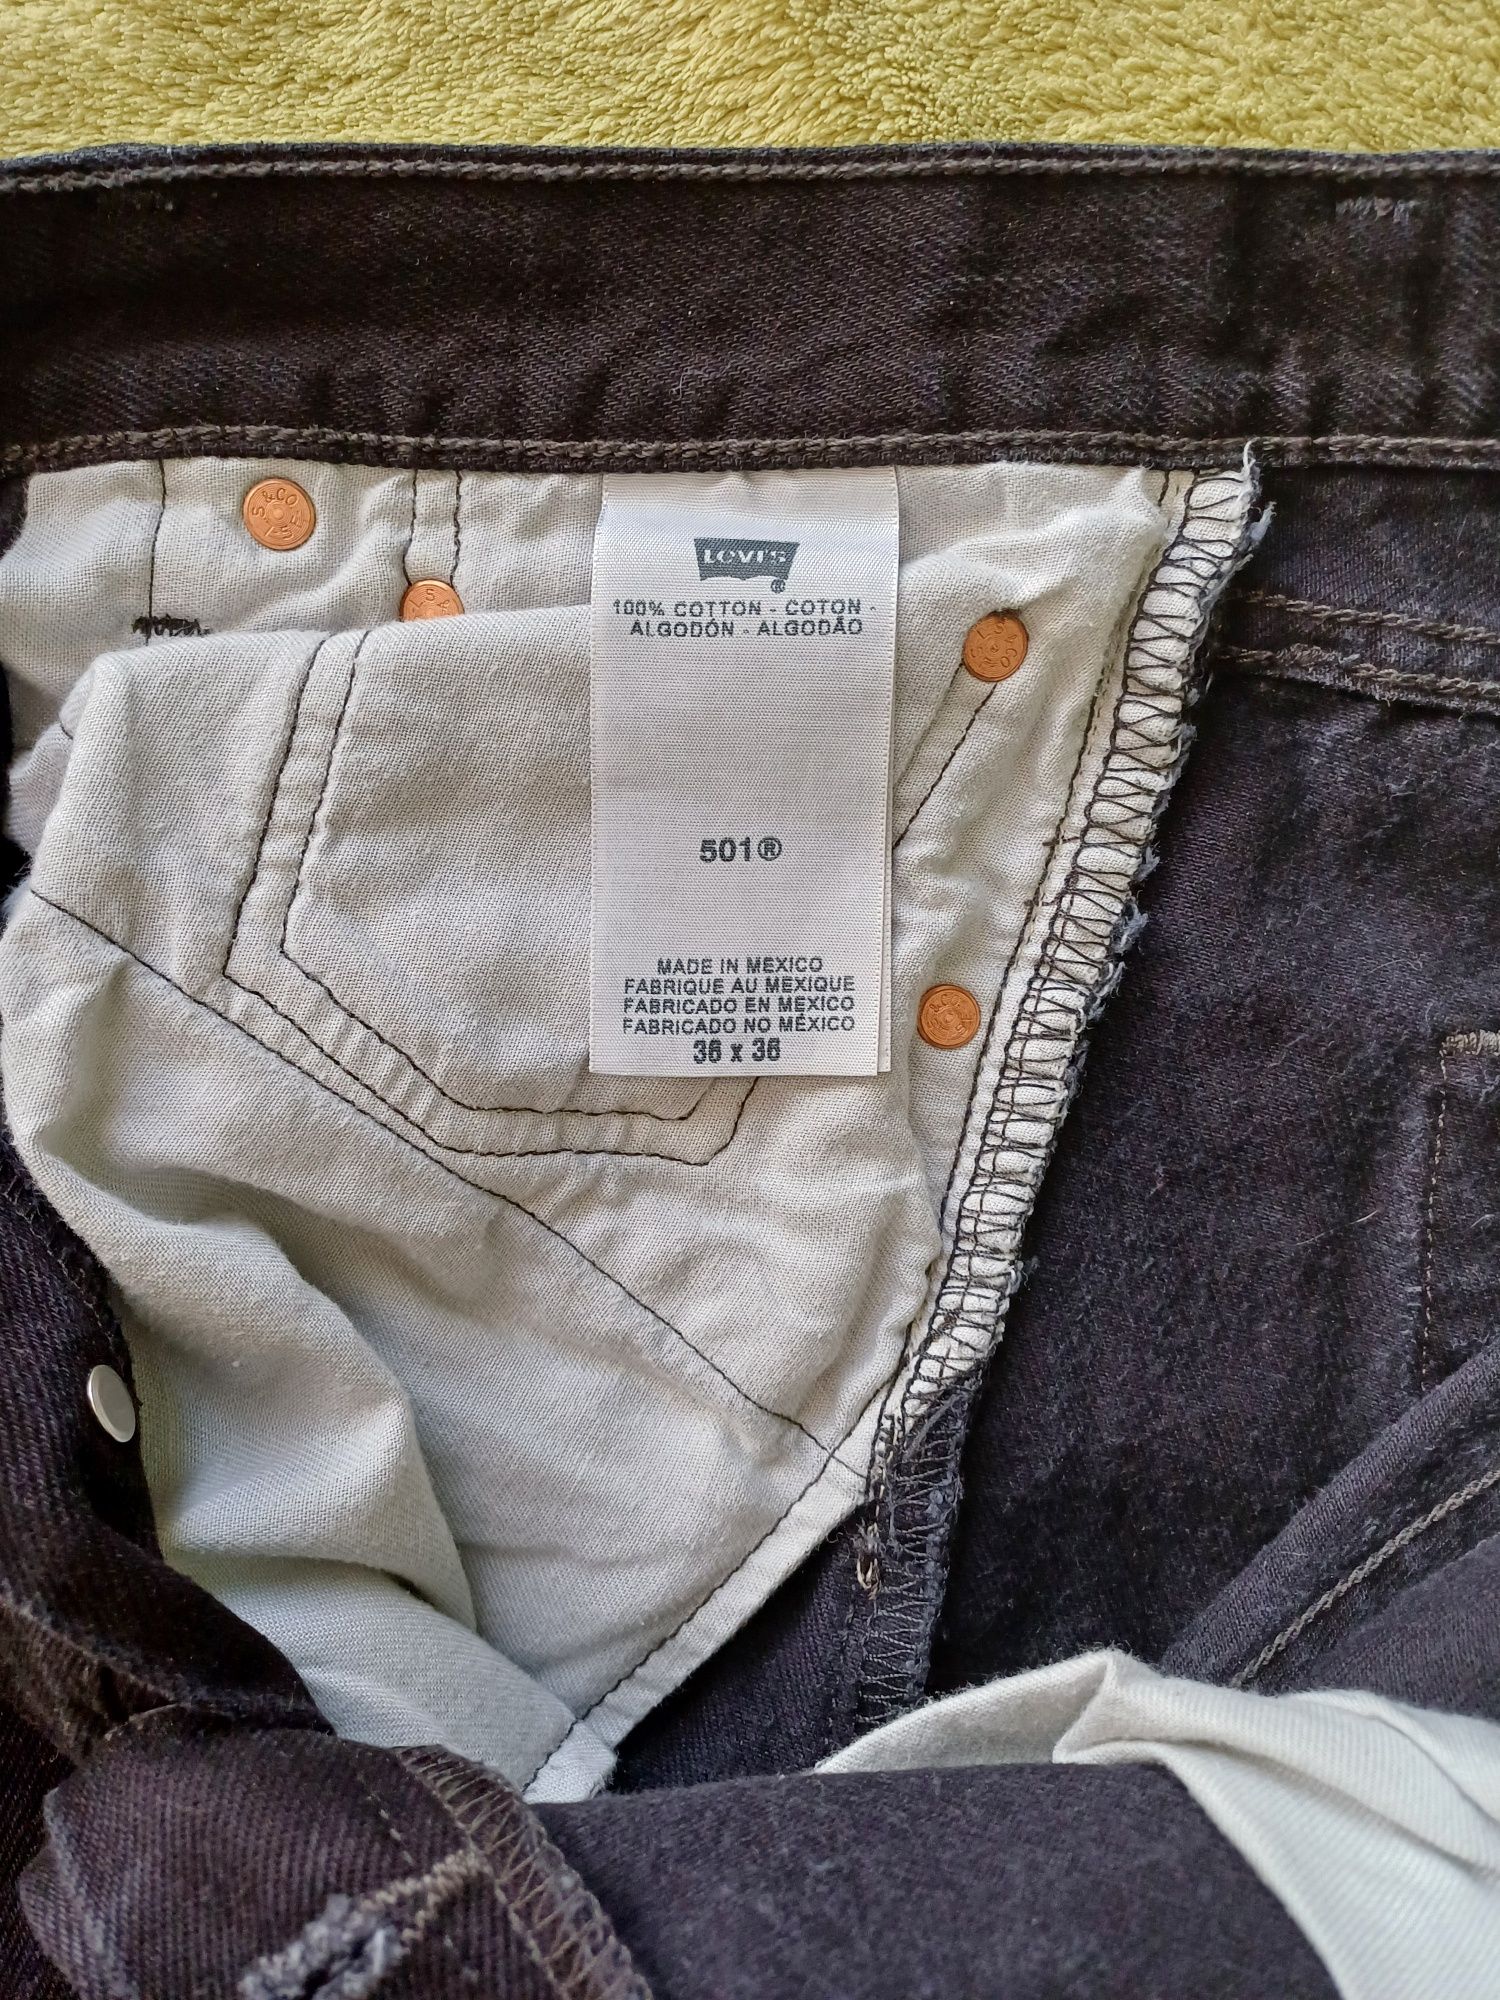 Nowe, męskie spodnie jeansowe marki Levi Strauss 501. Rozmiar W36 L36